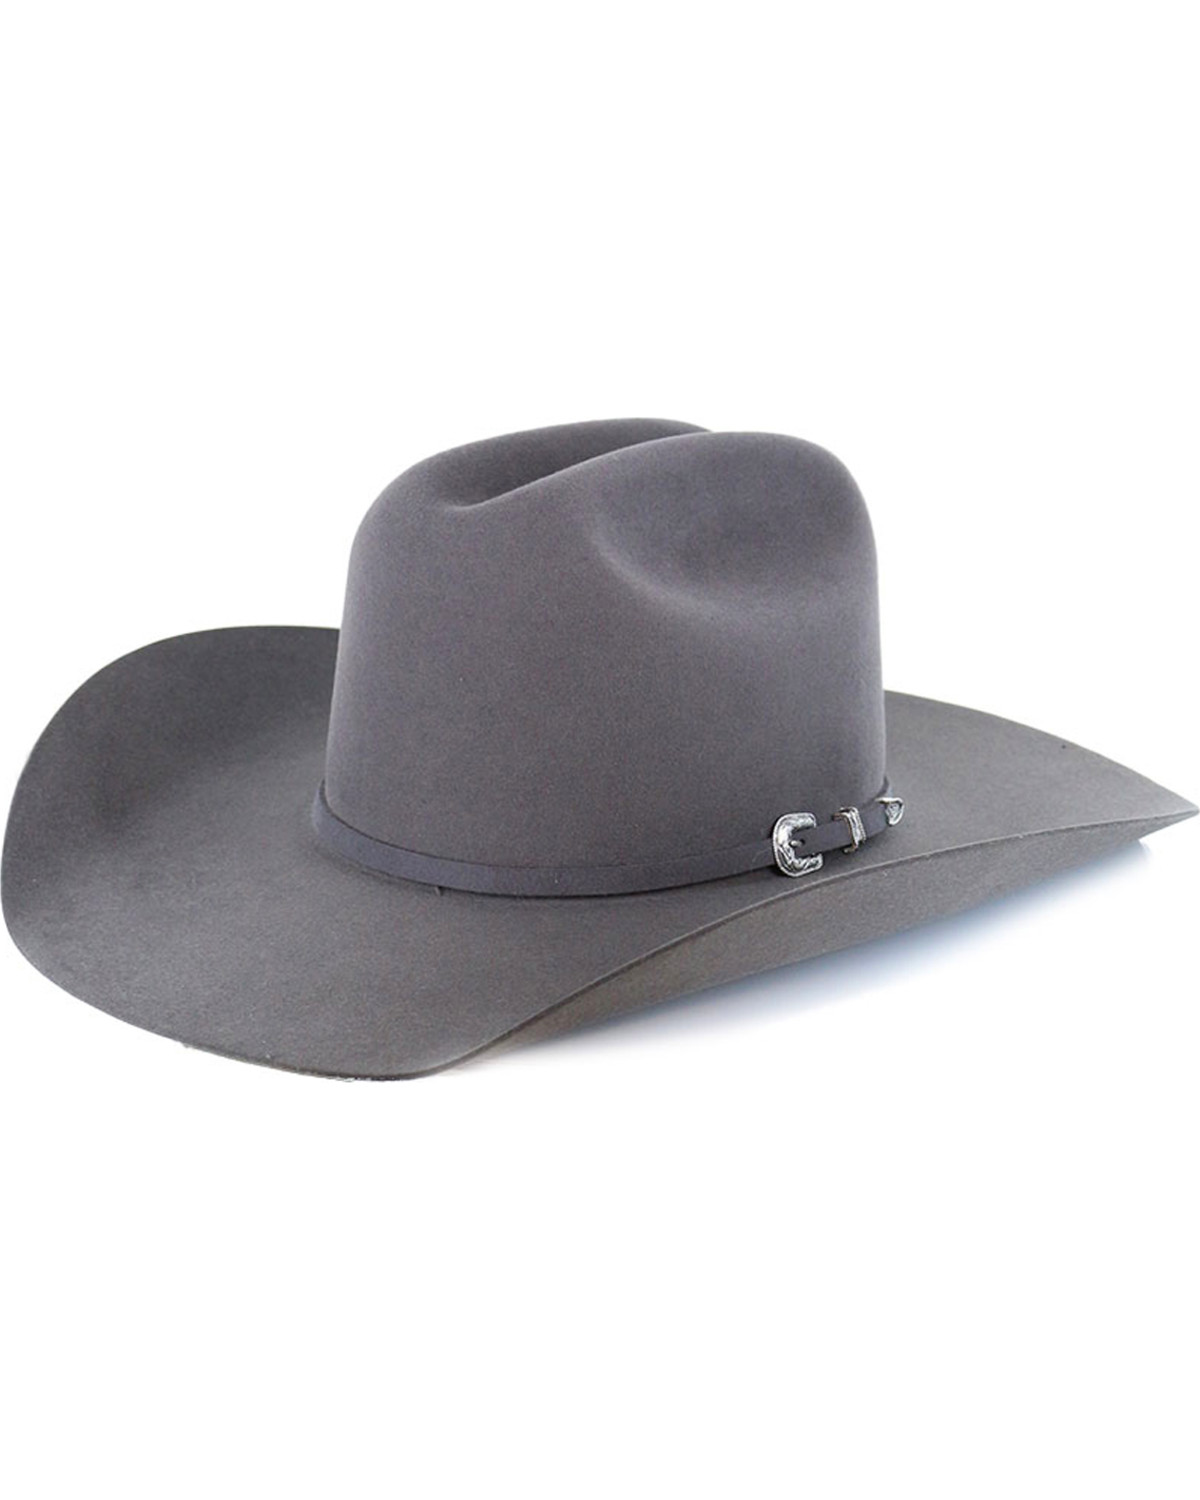 Fur Felt Cowboy Hats